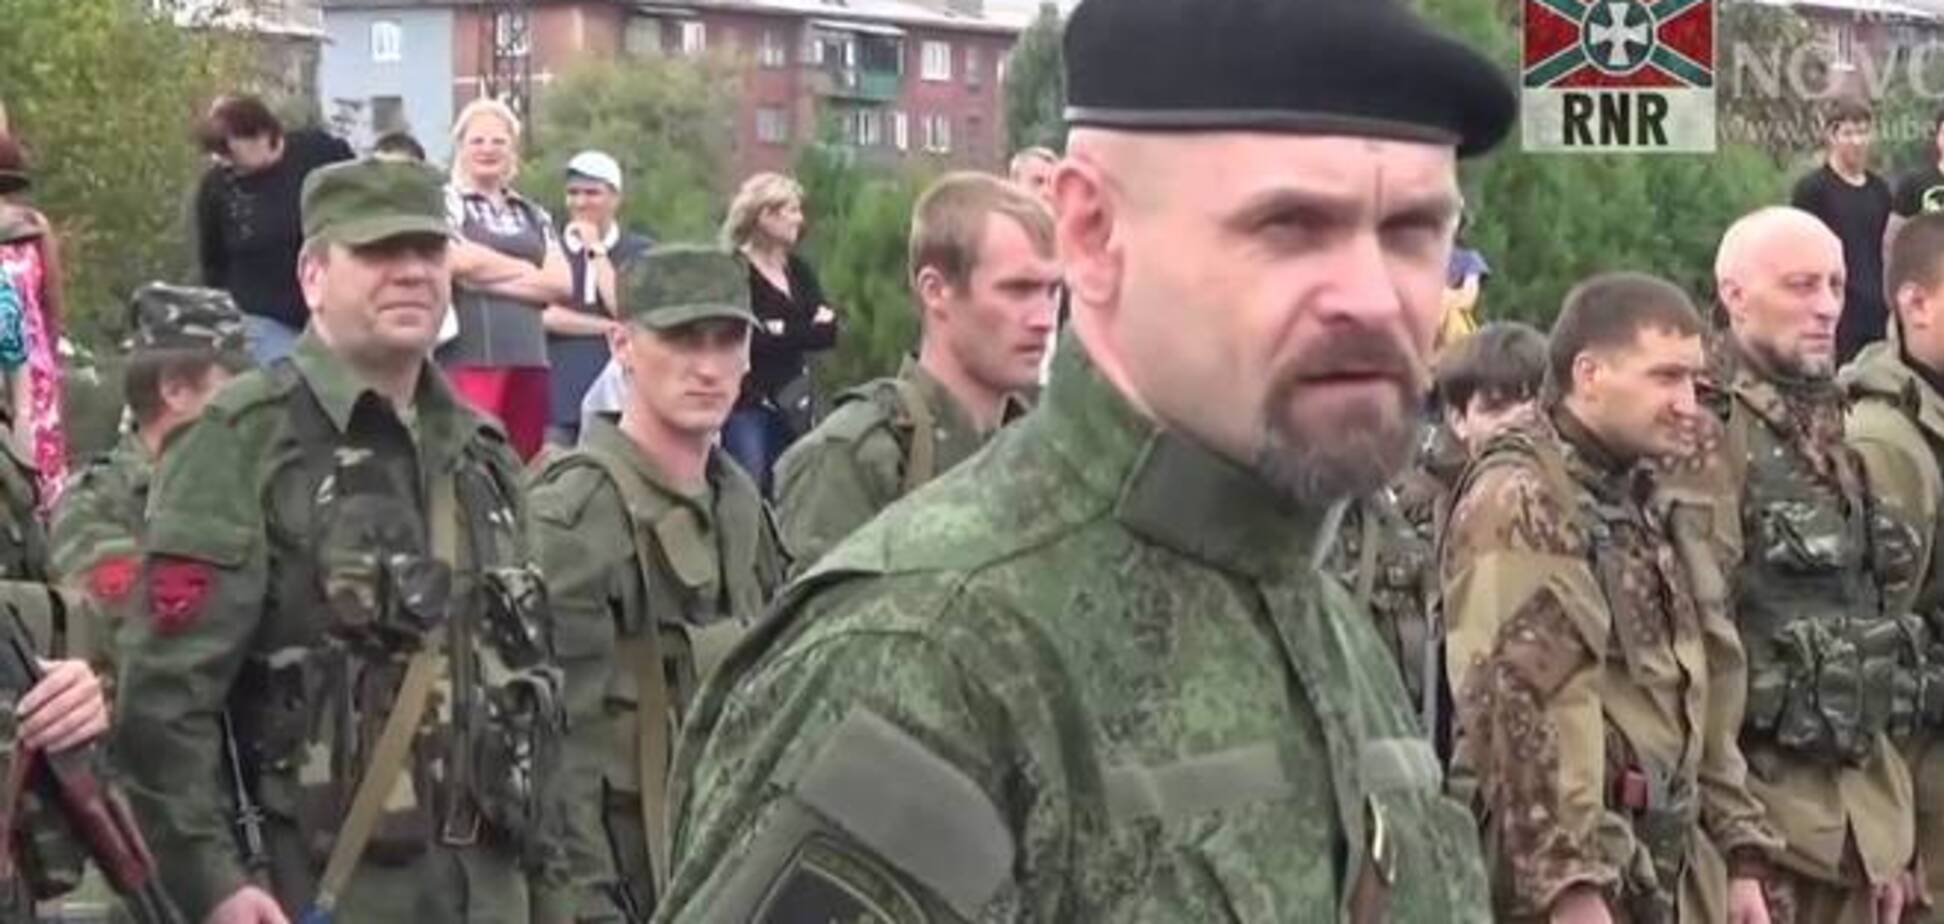 Луганский террорист Мозговой признал в убийцах московских полицейских своих 'призраков'